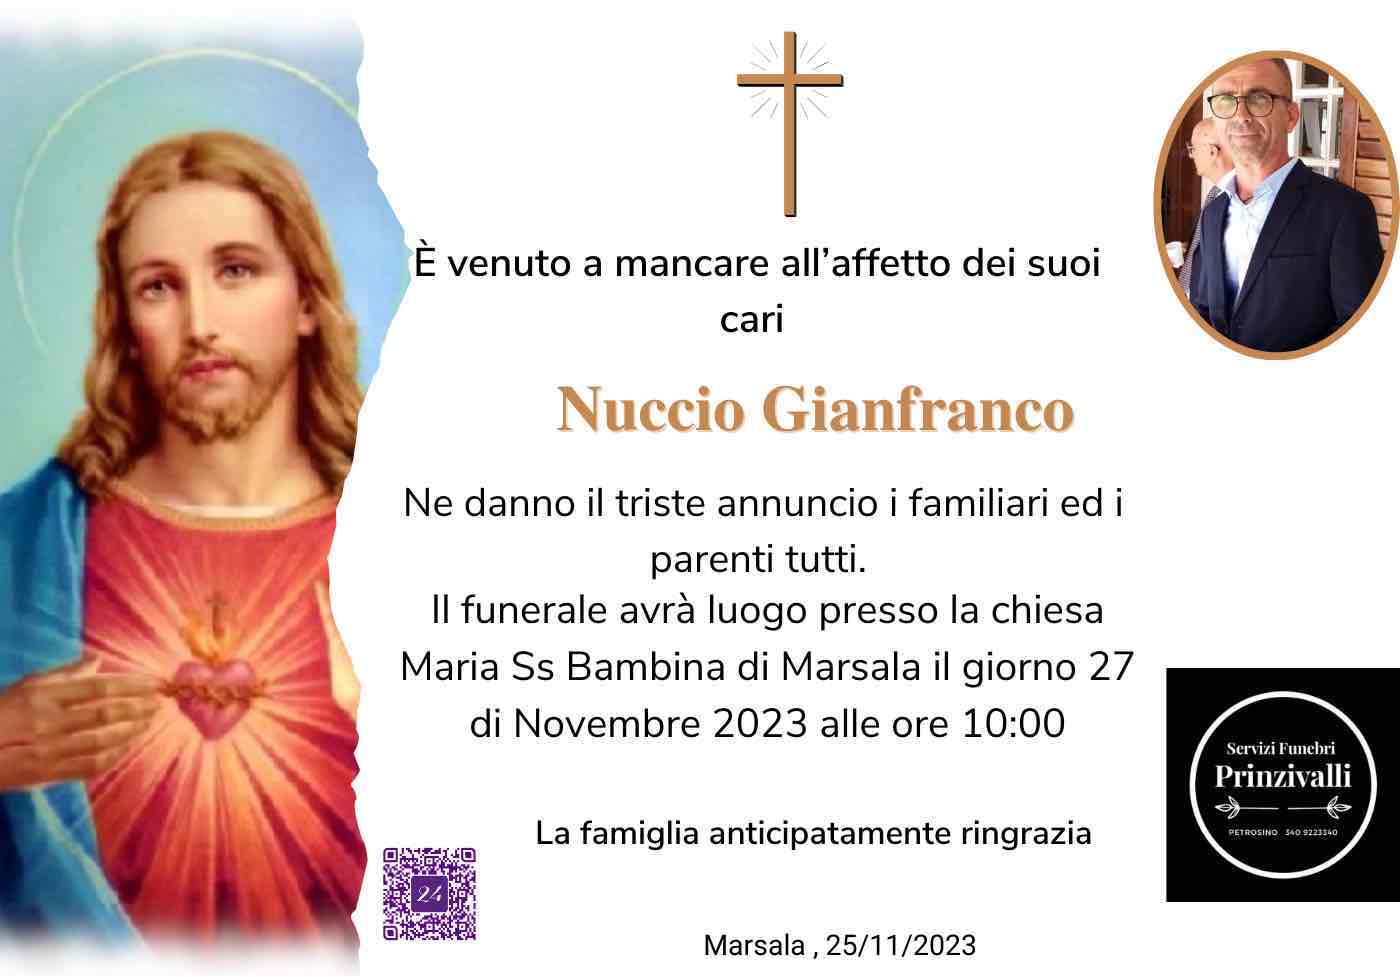 Gianfranco Nuccio